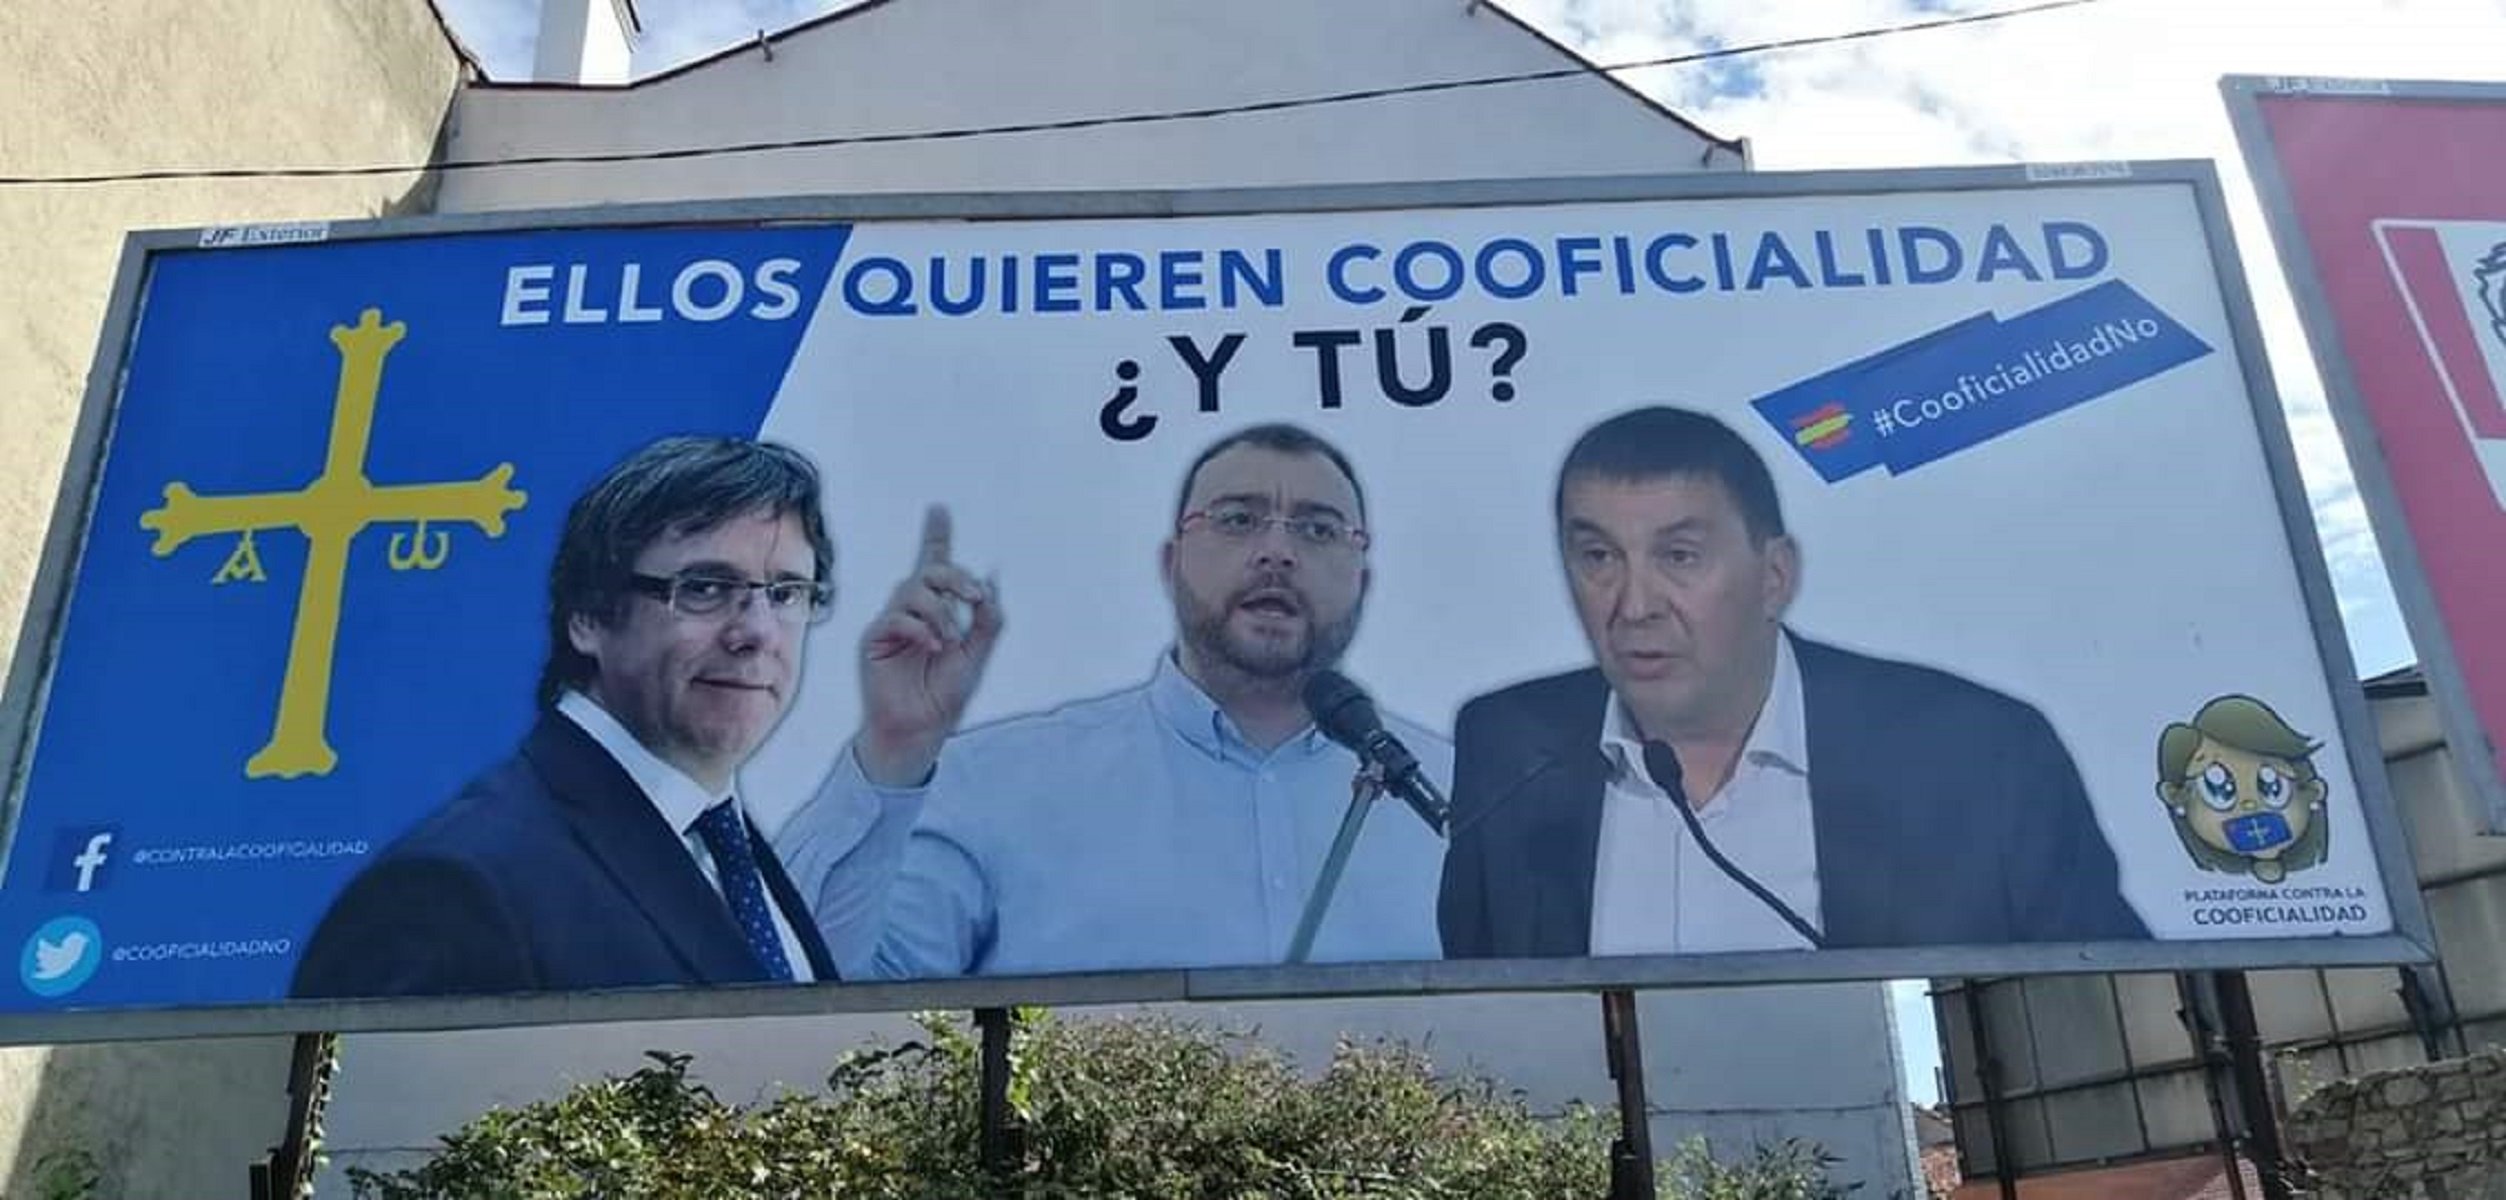 Utilitzen la imatge de Puigdemont contra el reconeixement de l'asturià